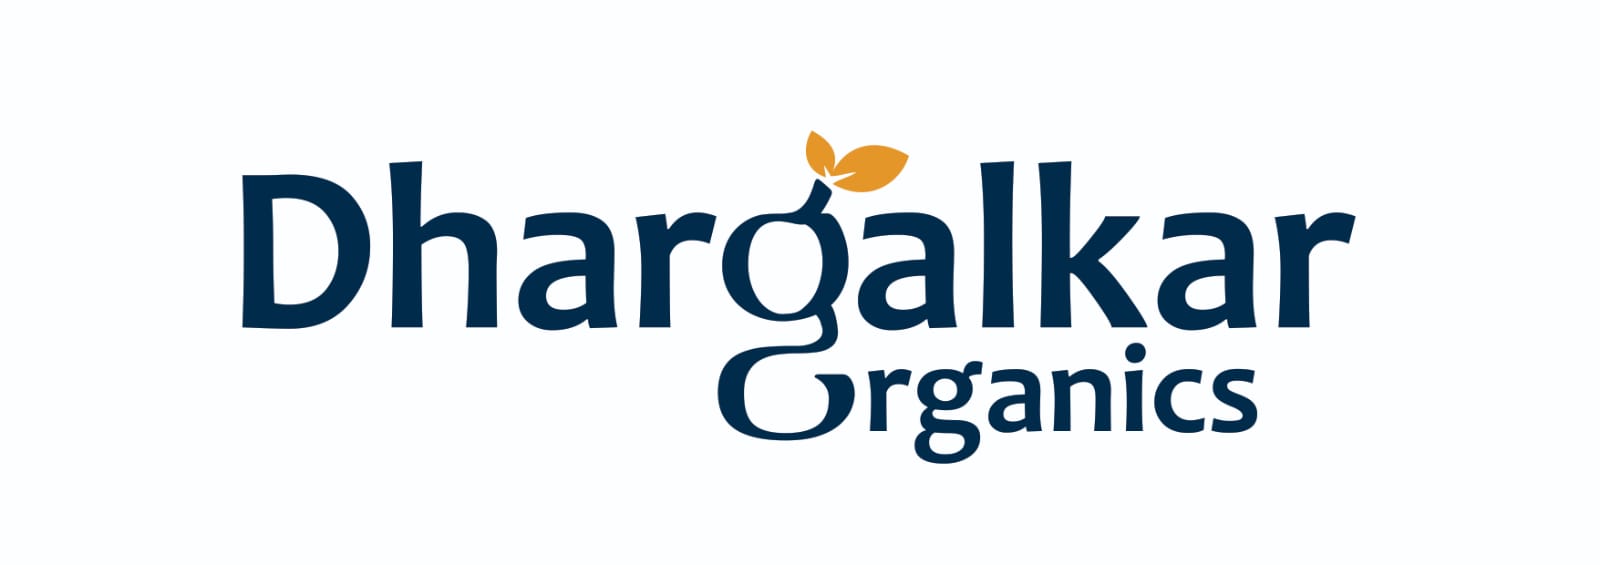 Dhargalkar Organic Grocery